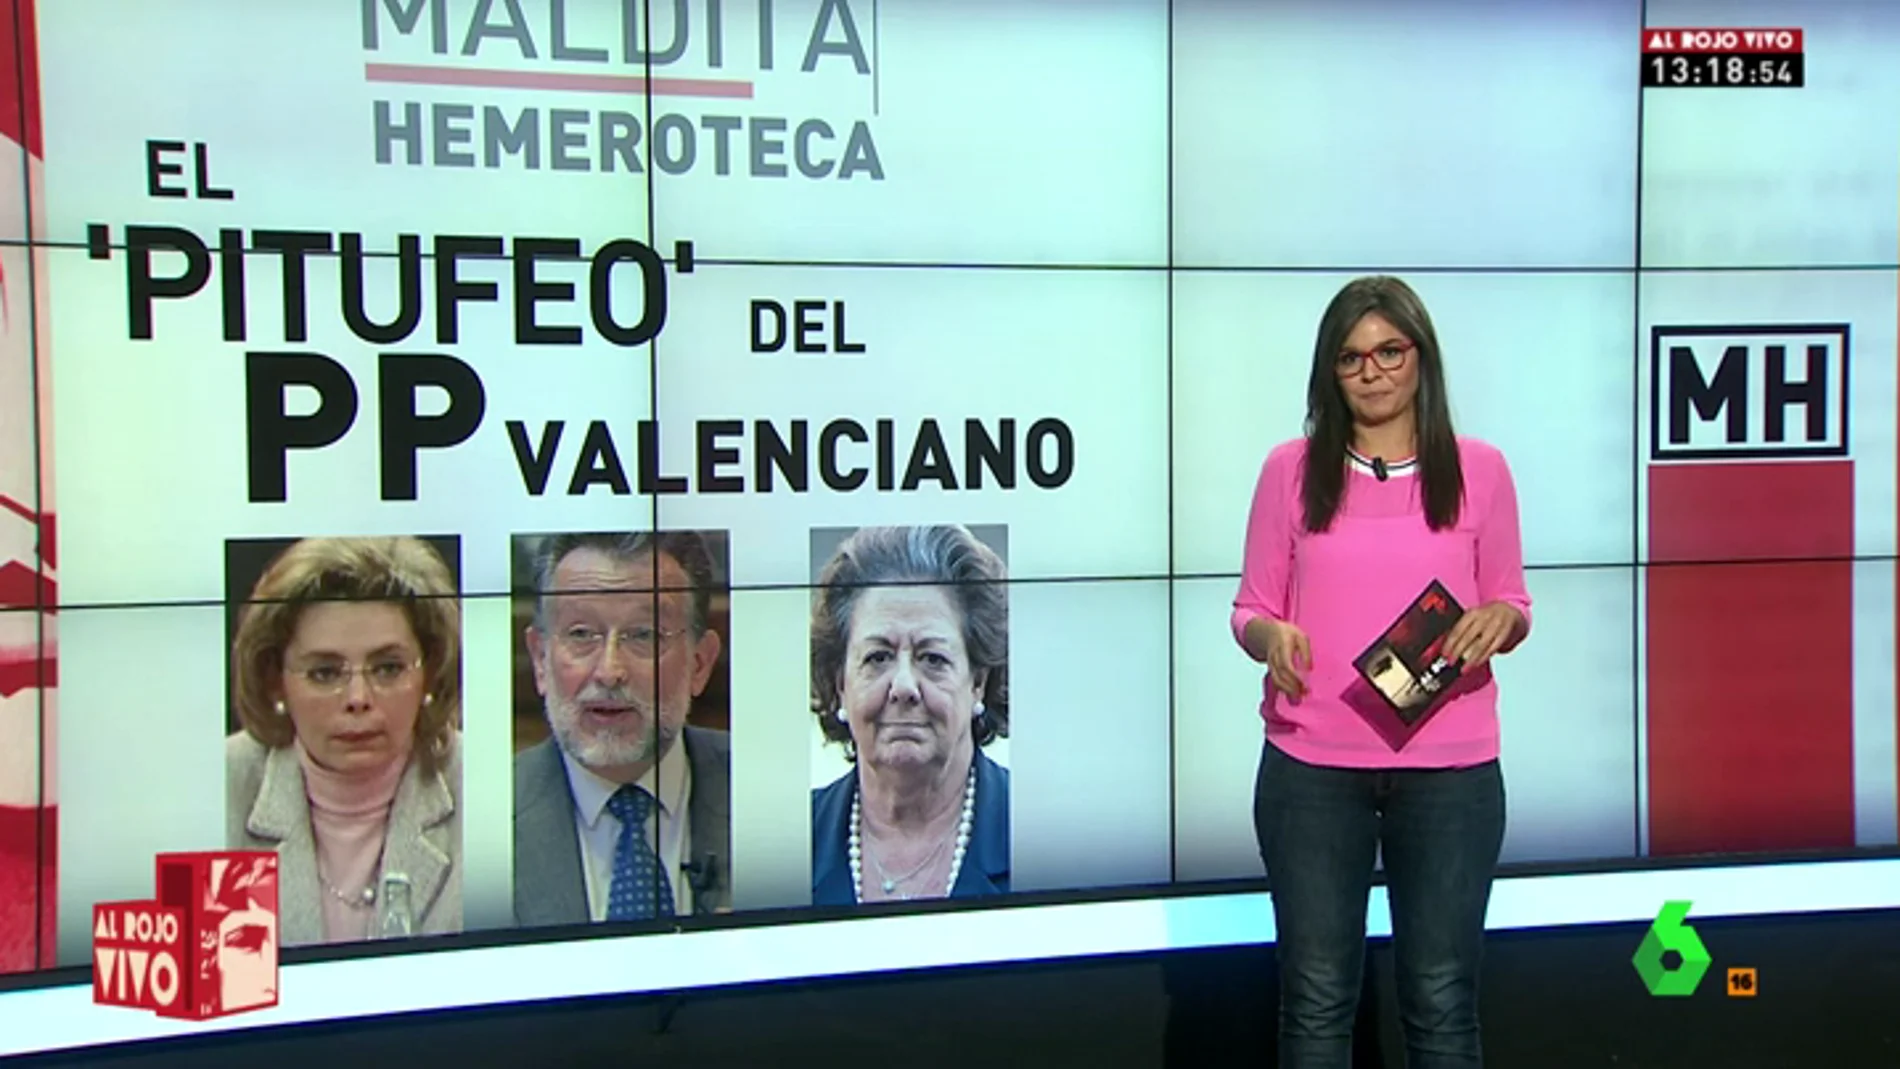 La corrupción política total: cronología del "pitufeo" del PP de Valencia hasta la confesión de Alcón